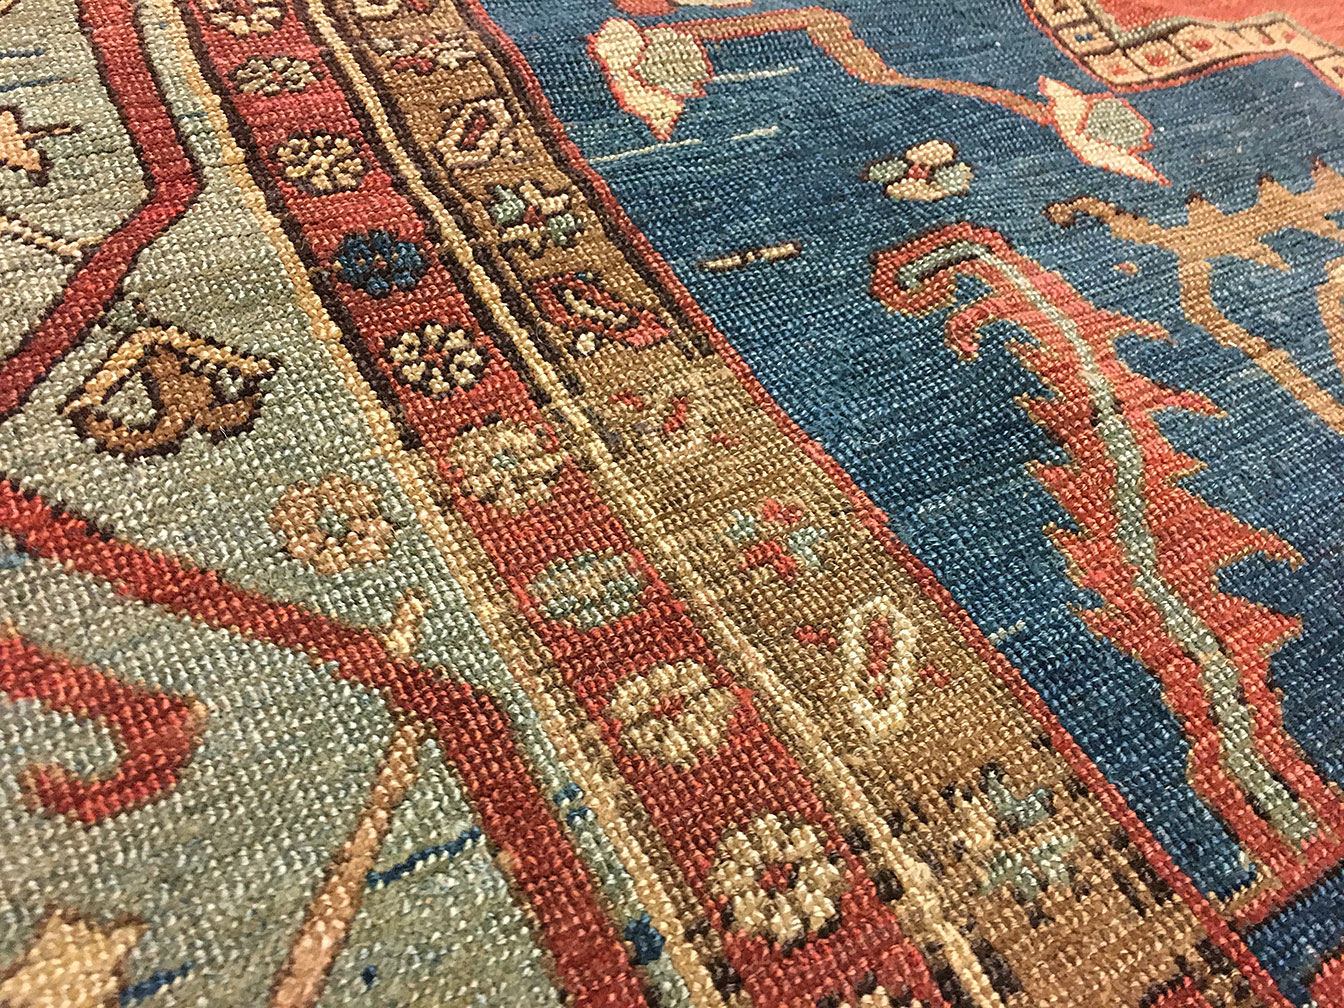 Antique heriz Carpet - # 53378